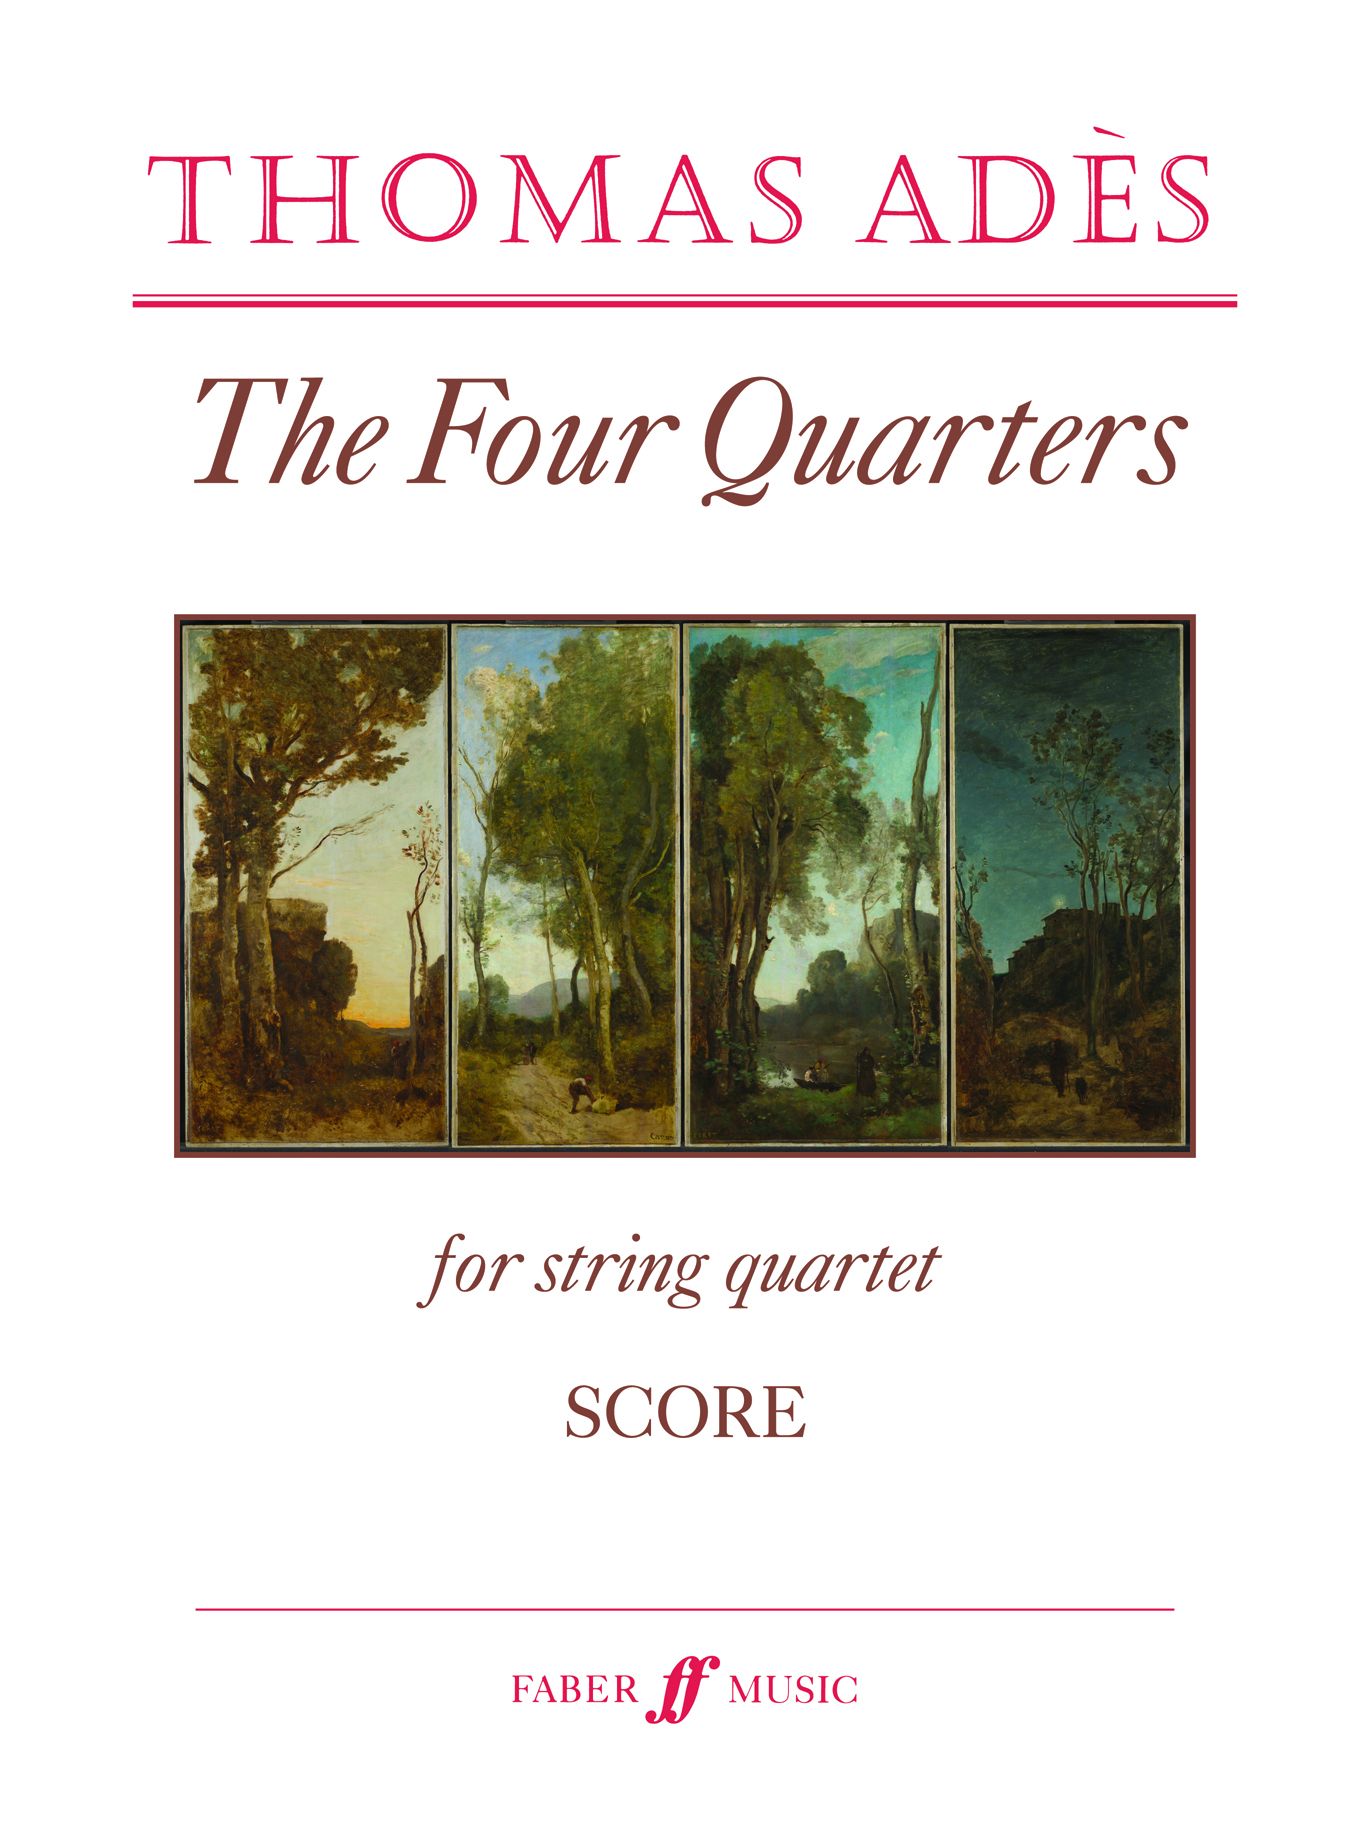 The Four Quarters (ADES THOMAS)